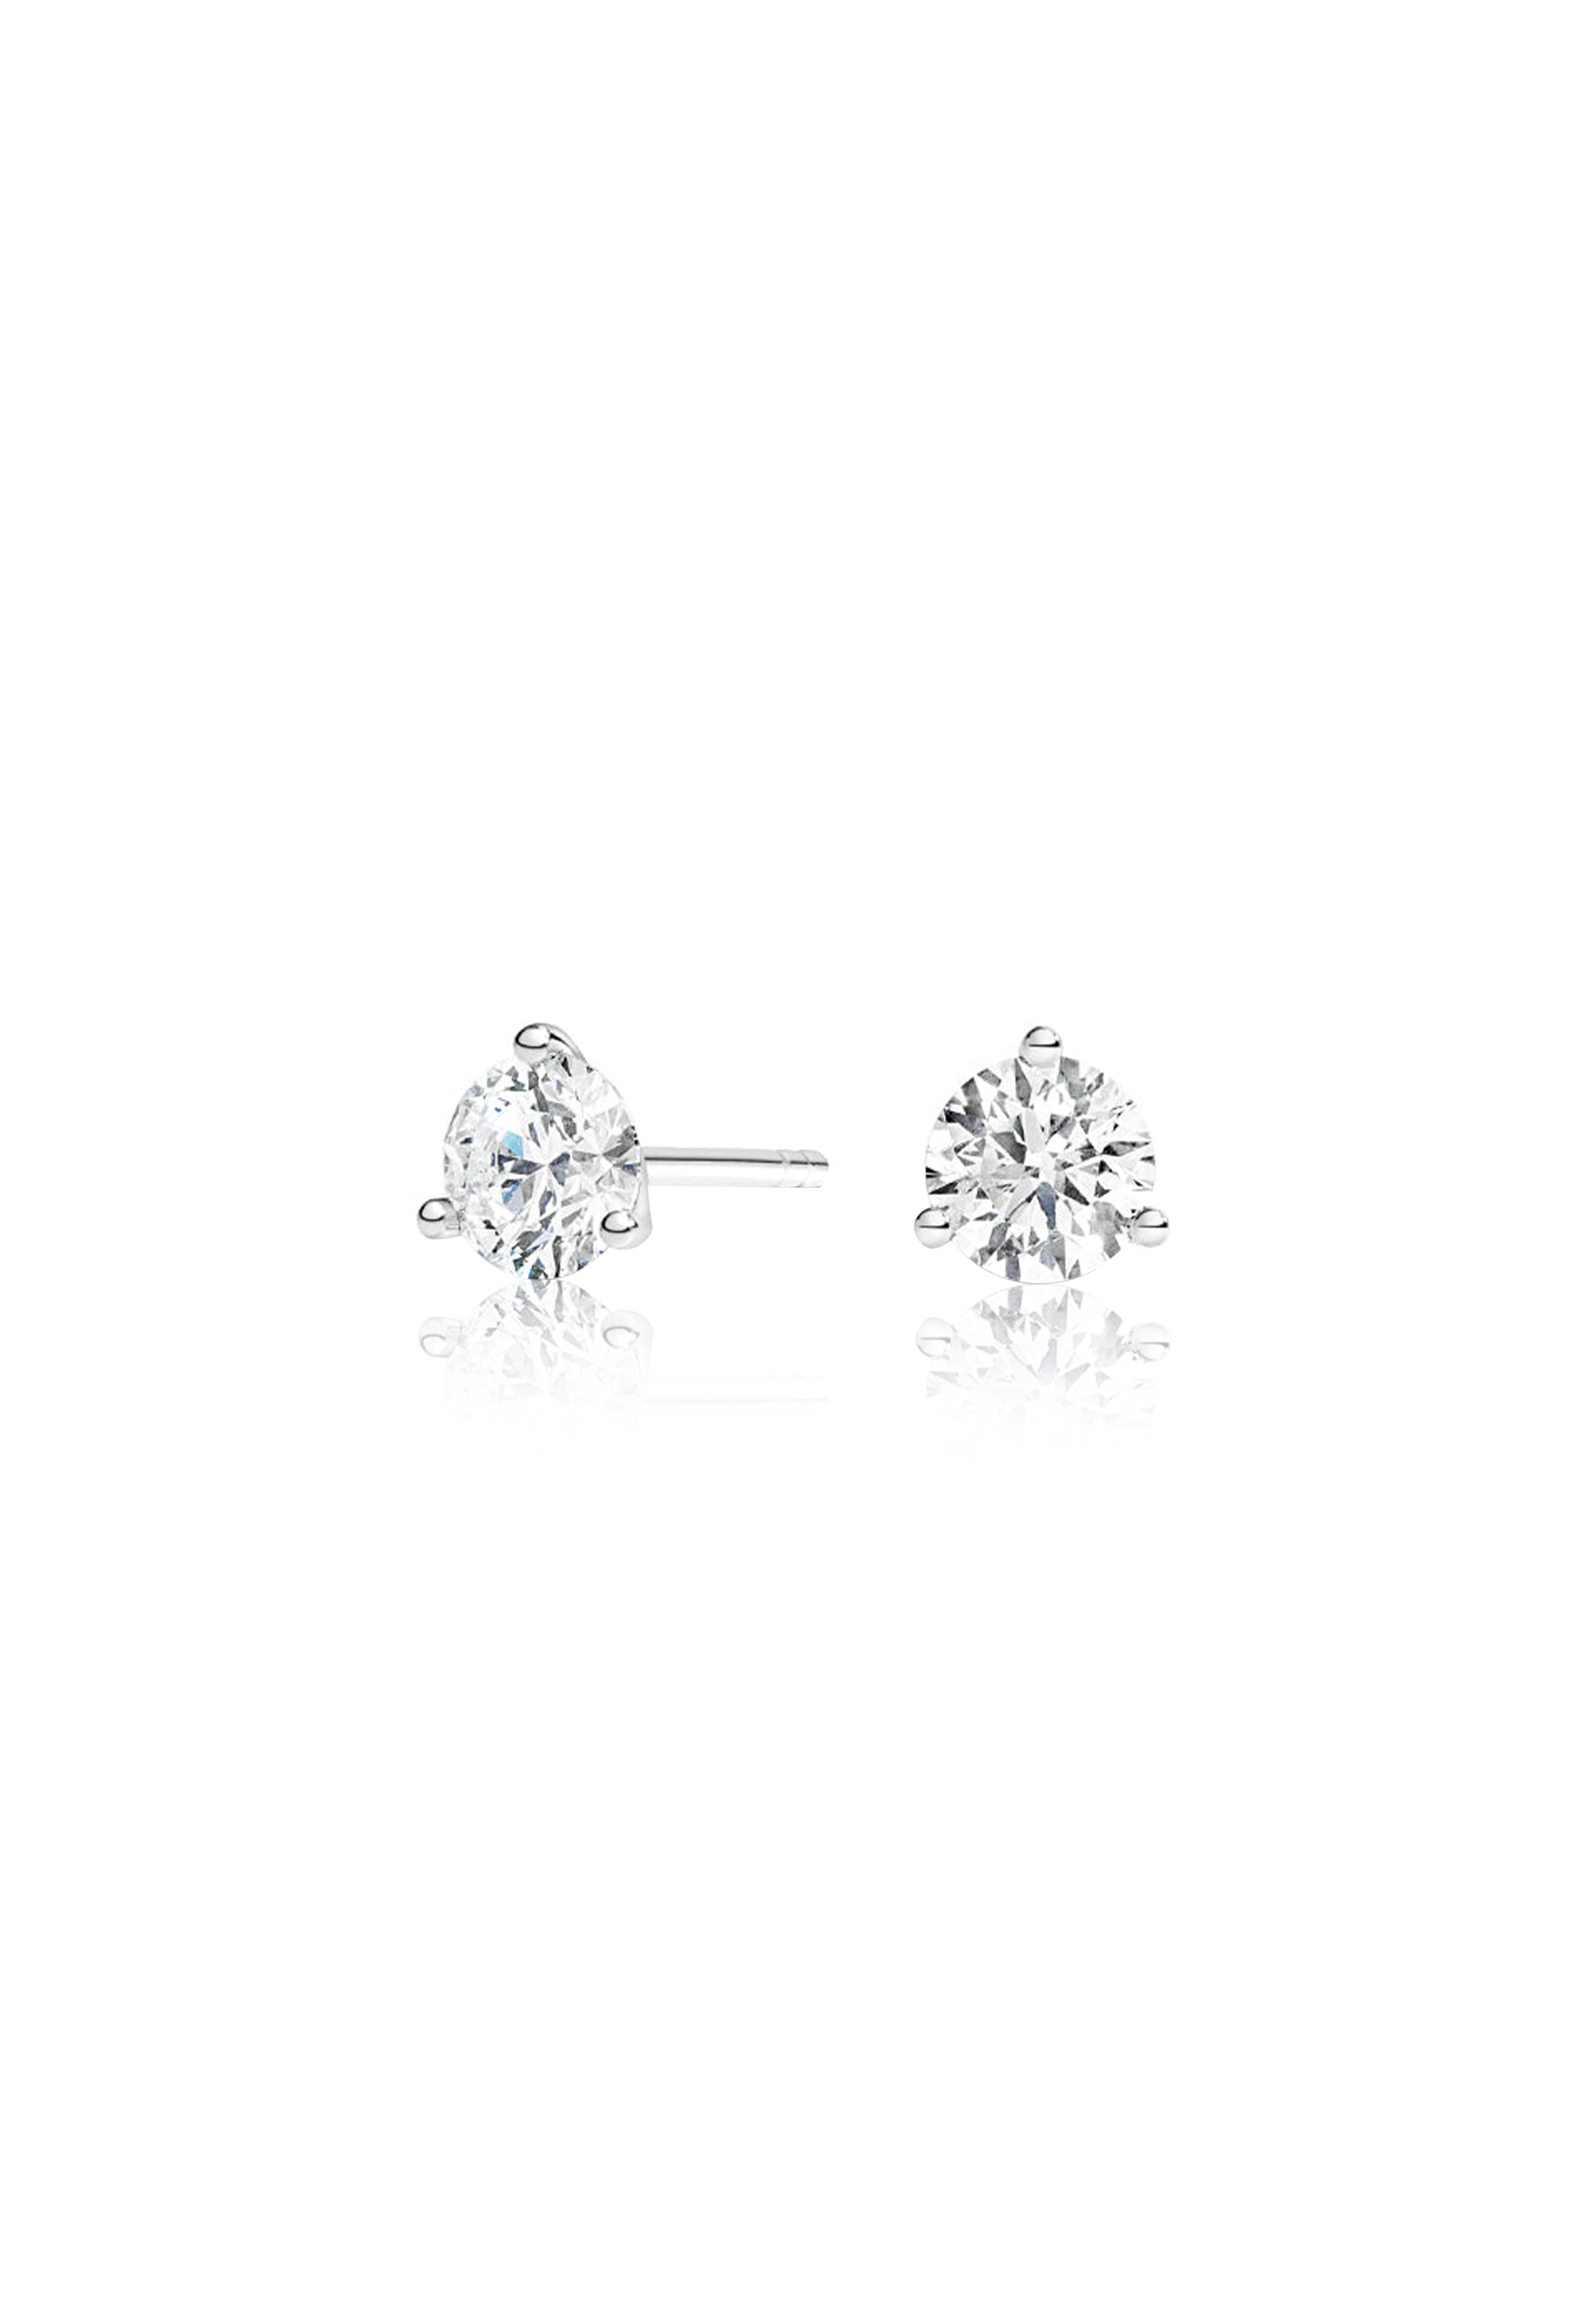 Round Cut Diamond Earrings 1.0 Carat (3-Prongs) - Fenom & Co.